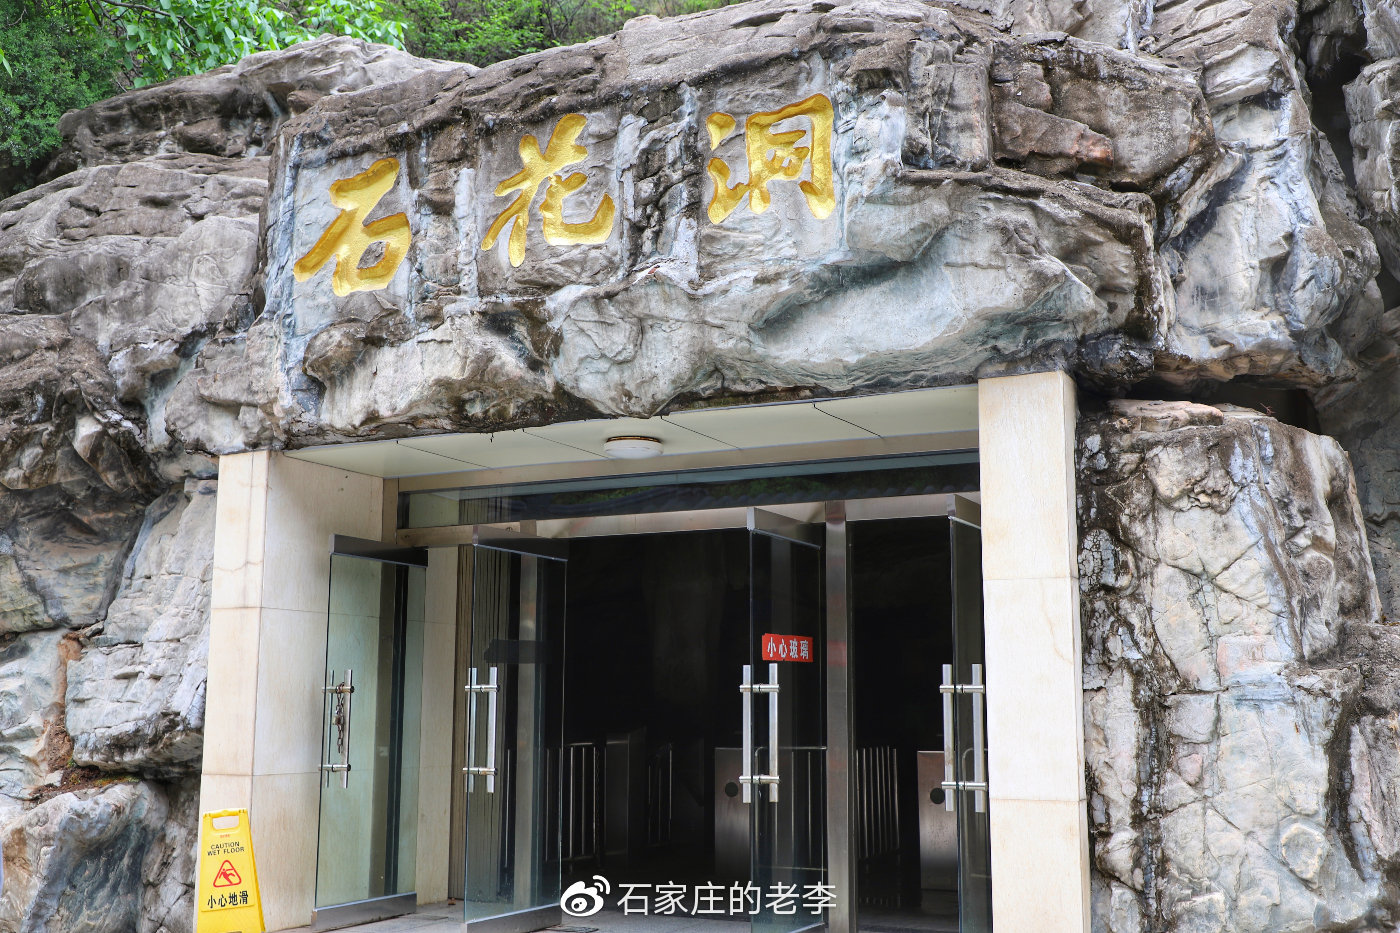 到北京石花洞感受溶洞博物馆的魅力